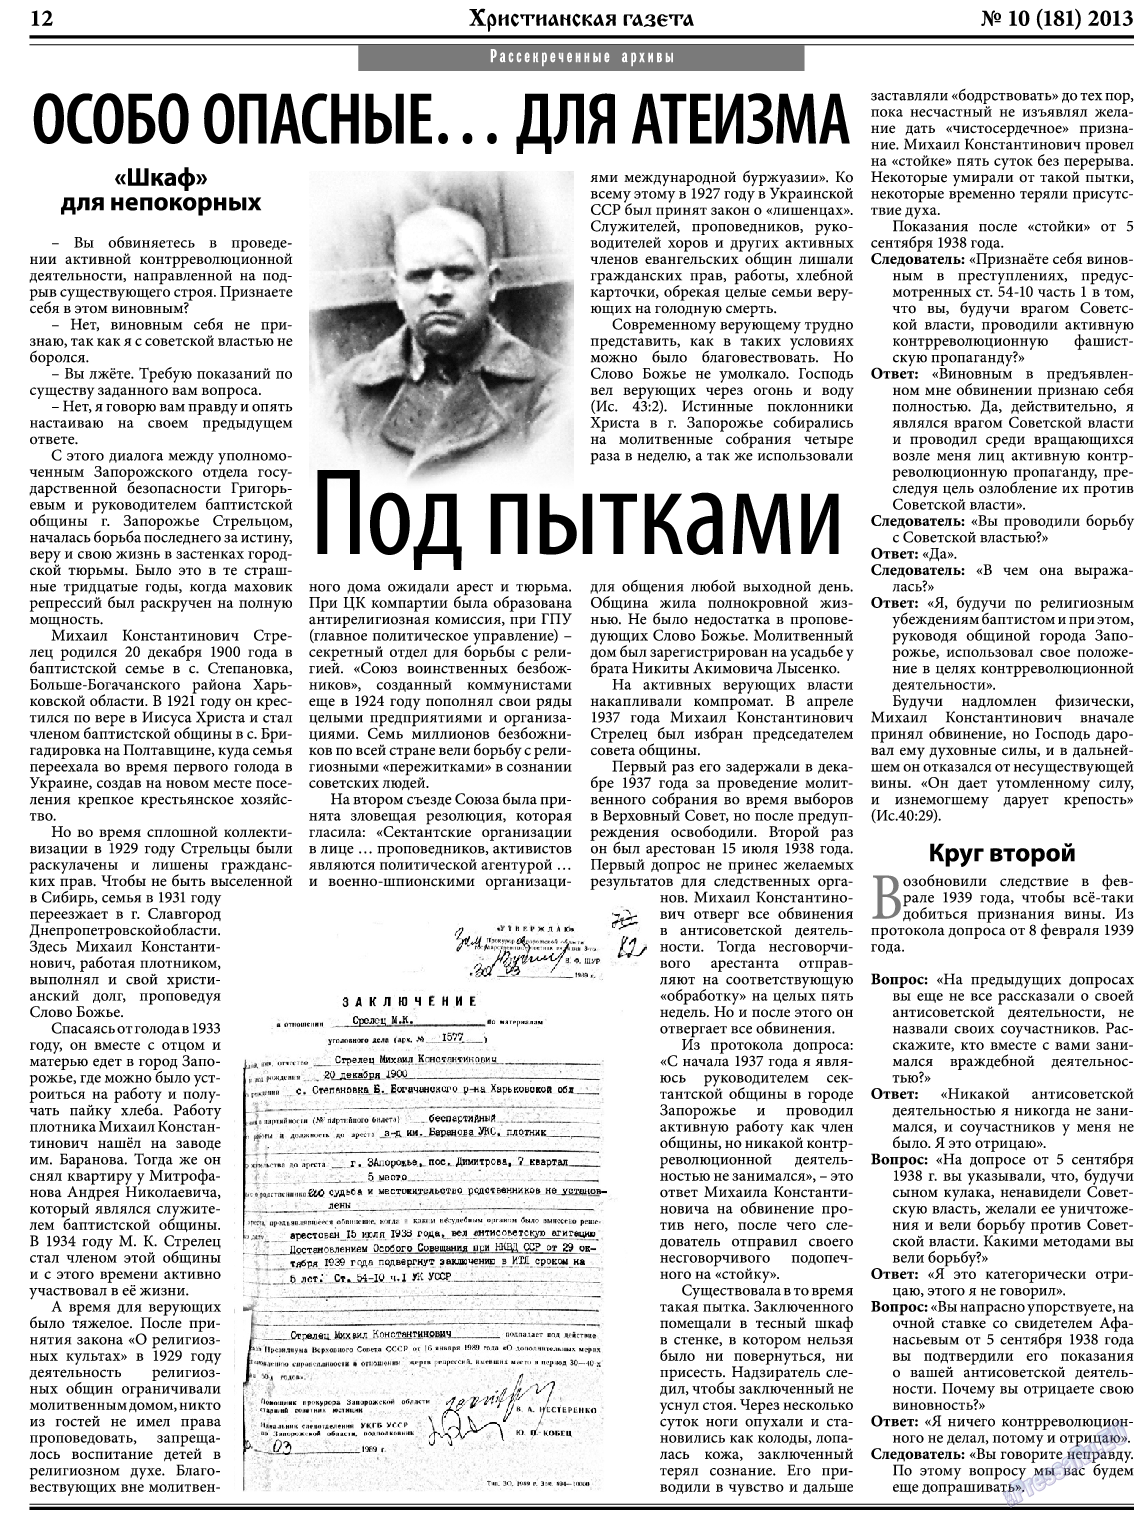 Христианская газета, газета. 2013 №10 стр.12